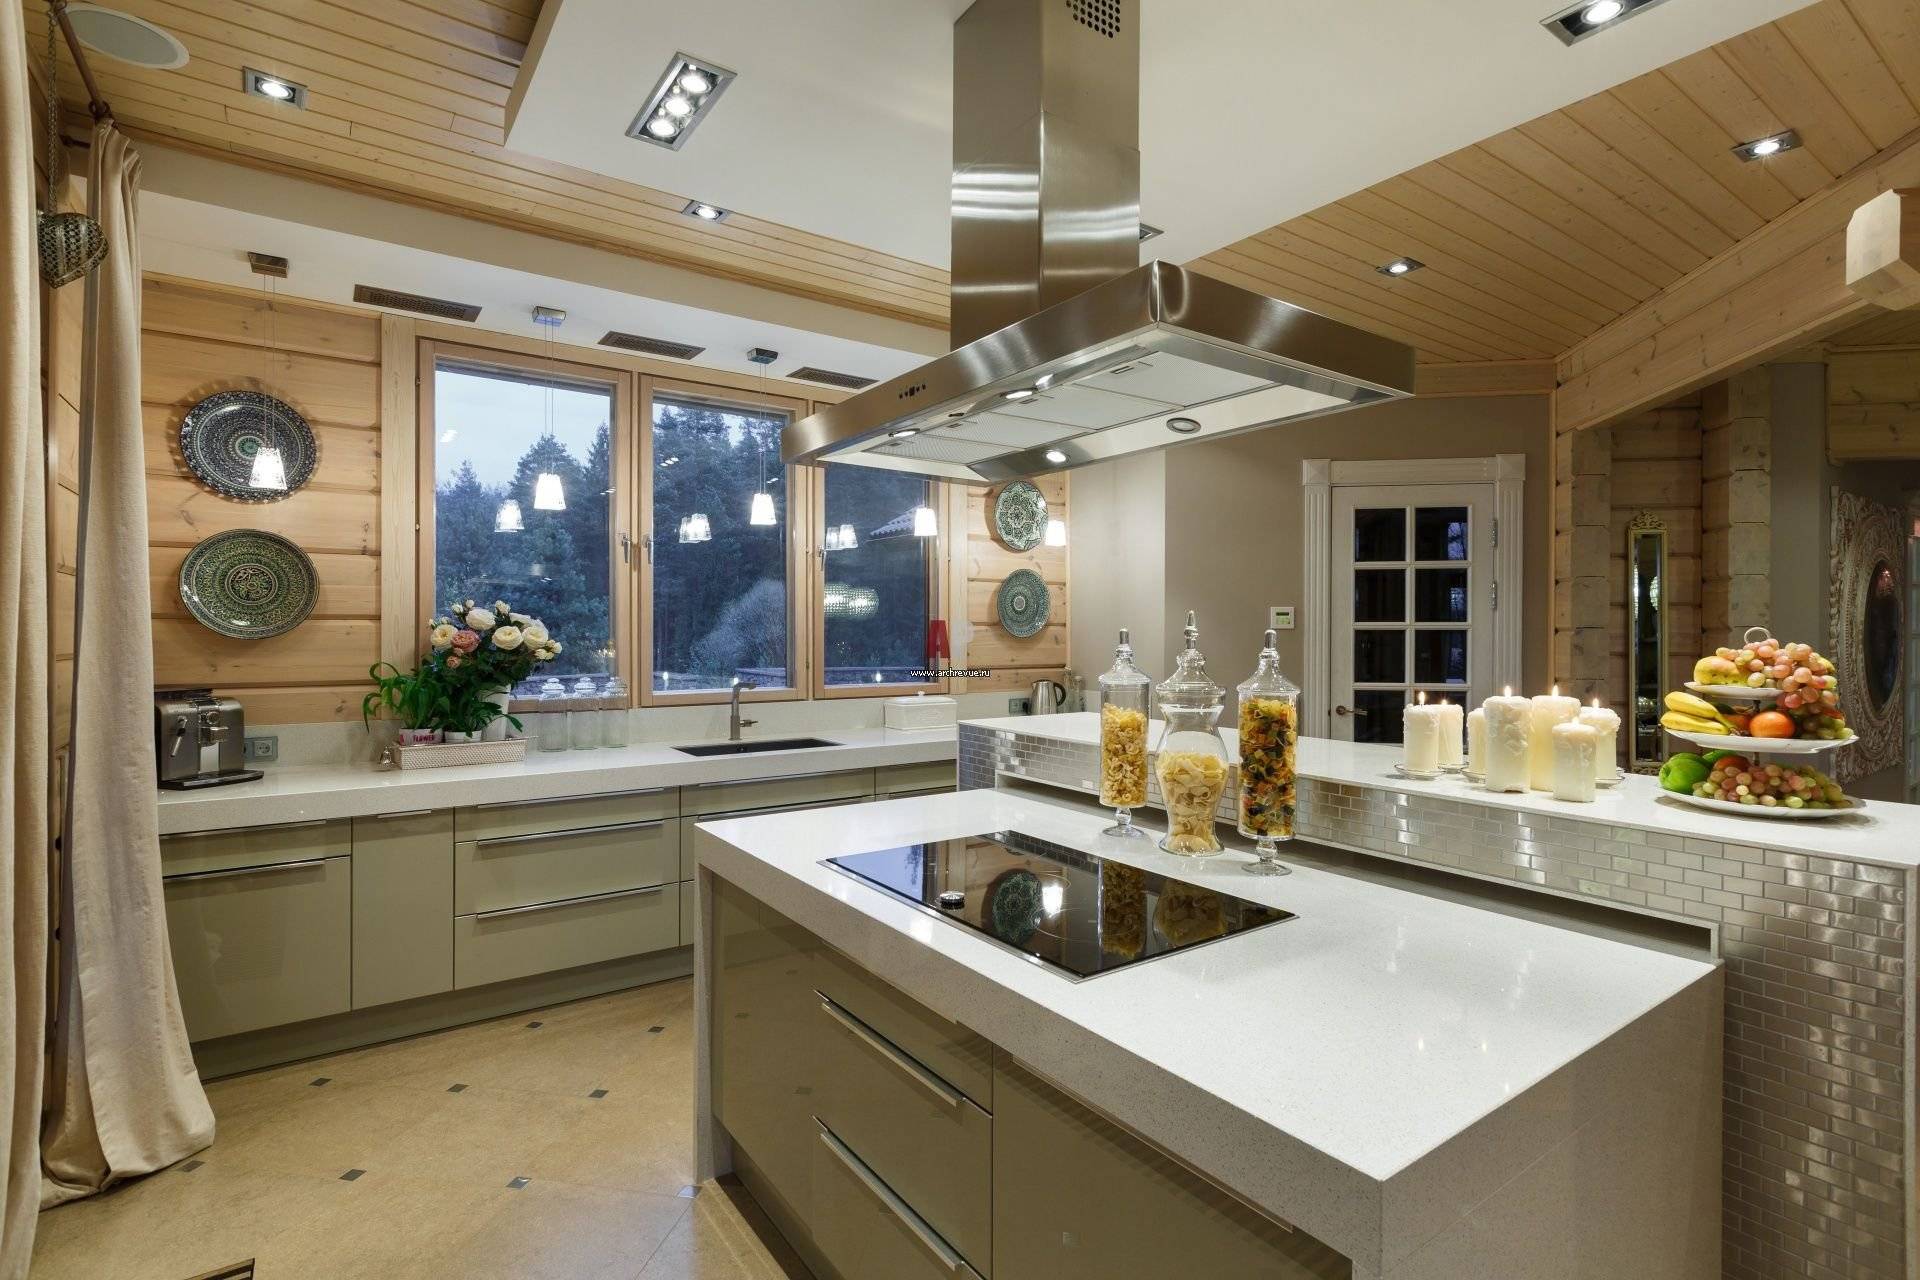 Кухня с двумя окнами: советы по оформлению и готовые идеи дизайна (50 фото)